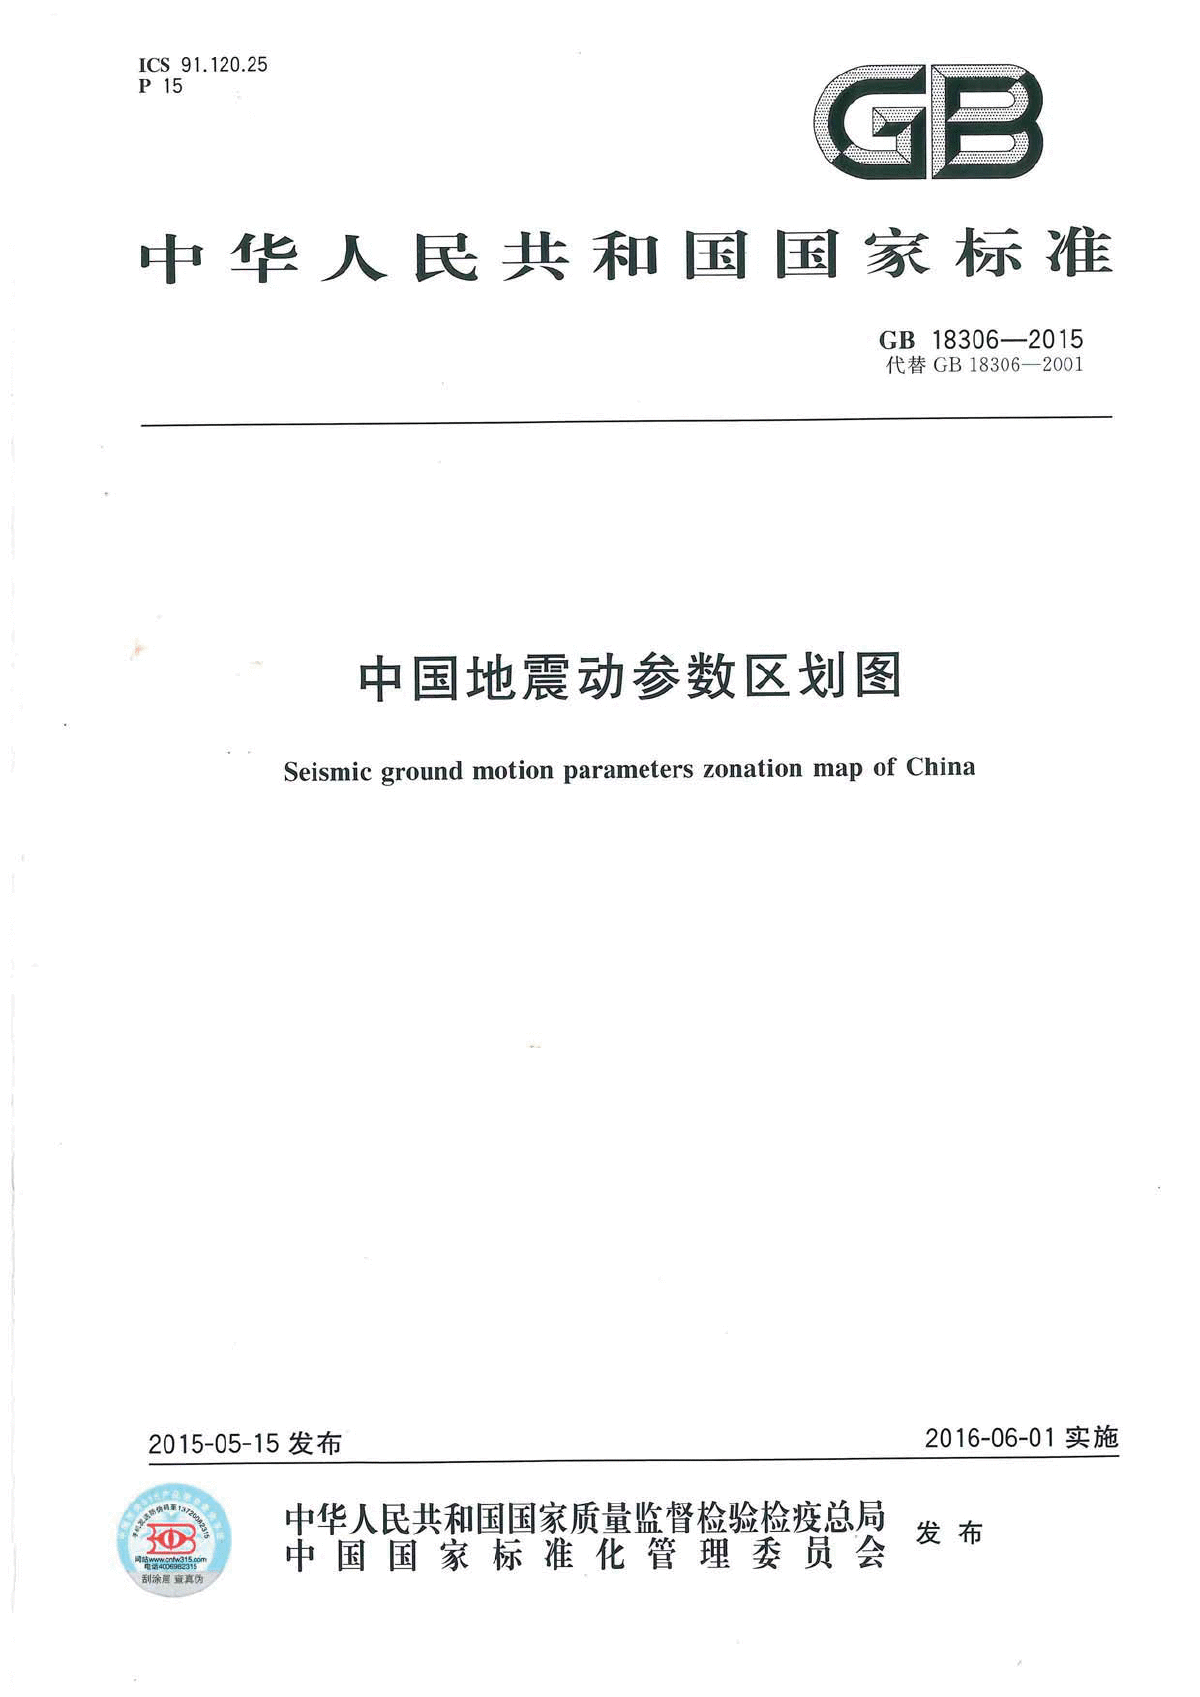 GB 18306-2015中国地震动参数区划图-图一